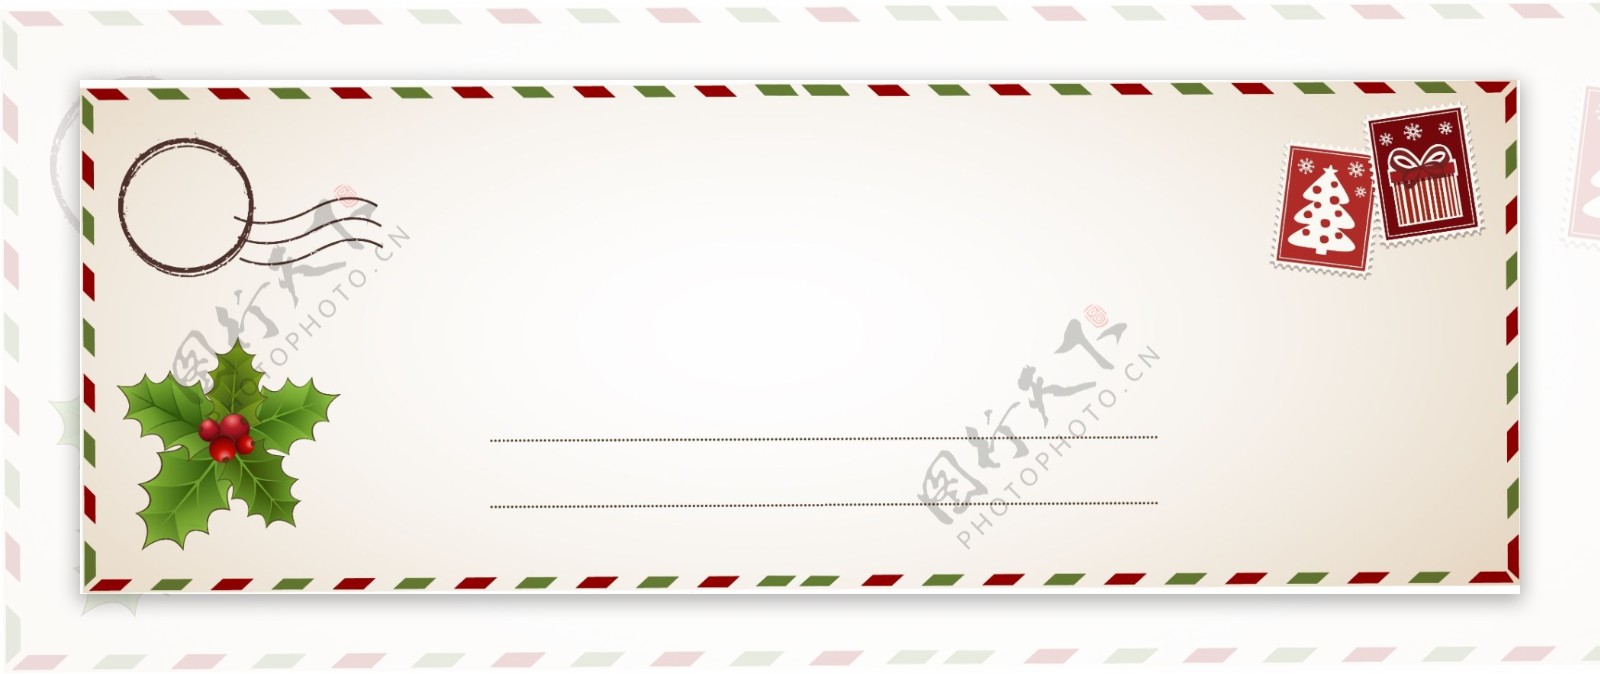 圣诞节明信片祝福手写动态ae模板